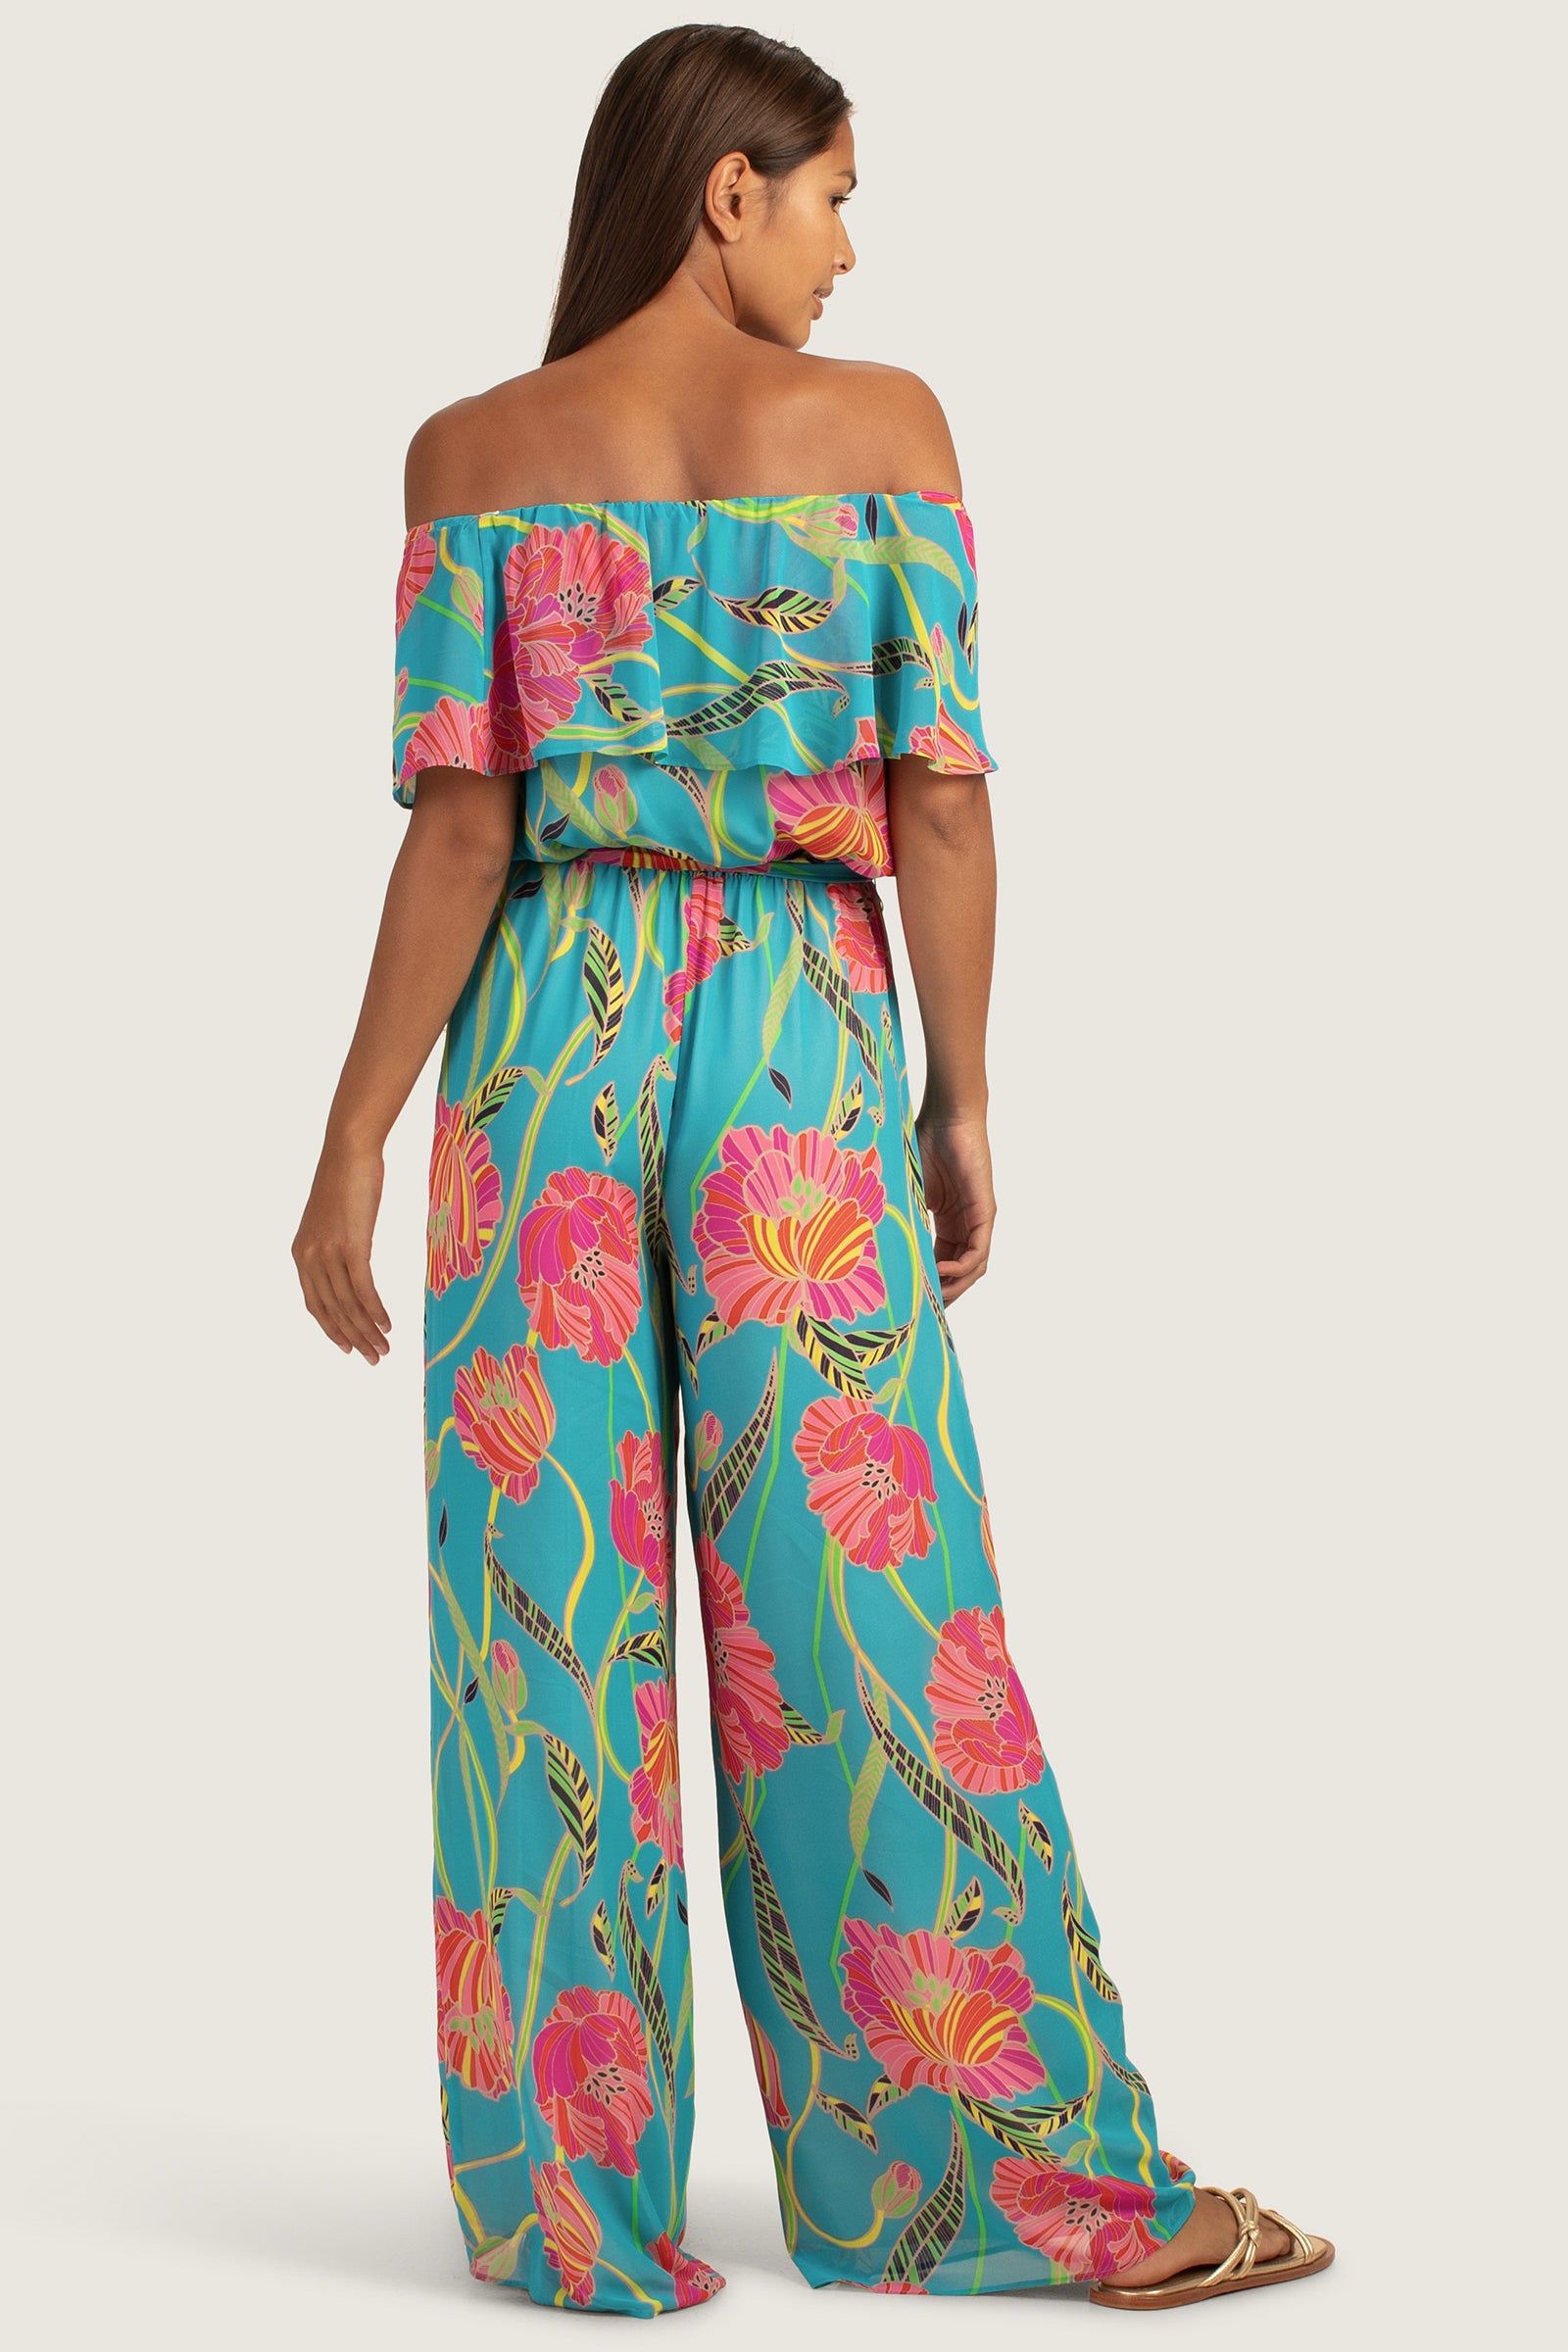 Chic Pink Jumpsuit - Tropical Print Jumpsuit - Floral Jumpsuit - Lulus